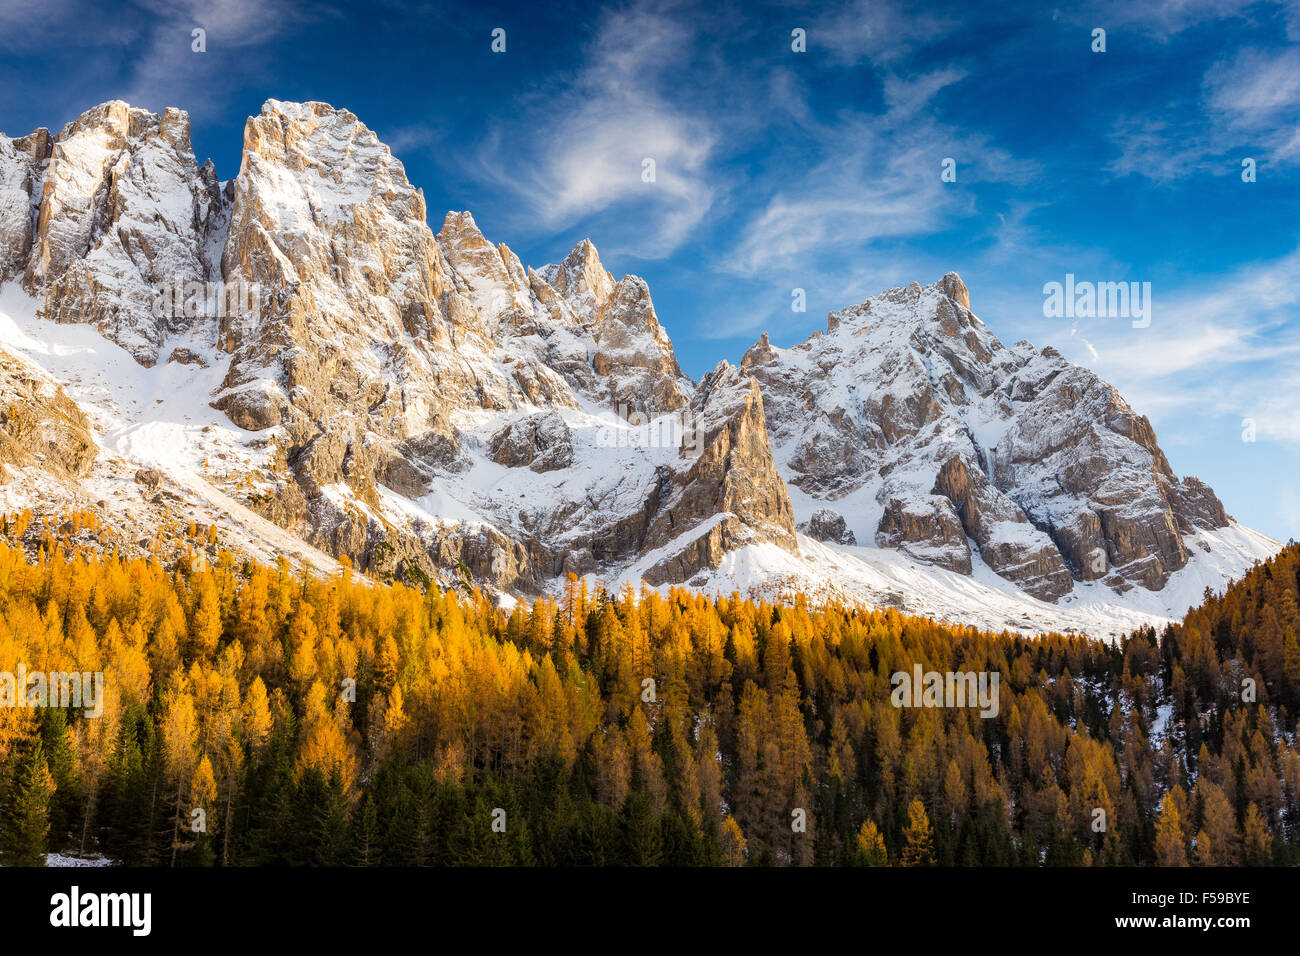 The Pale di San Martino massif in autumn. Val Venegia valley. The Dolomites of Paneveggio-Pale di San Martino Nature Park. Trentino. Italian Alps. Stock Photo